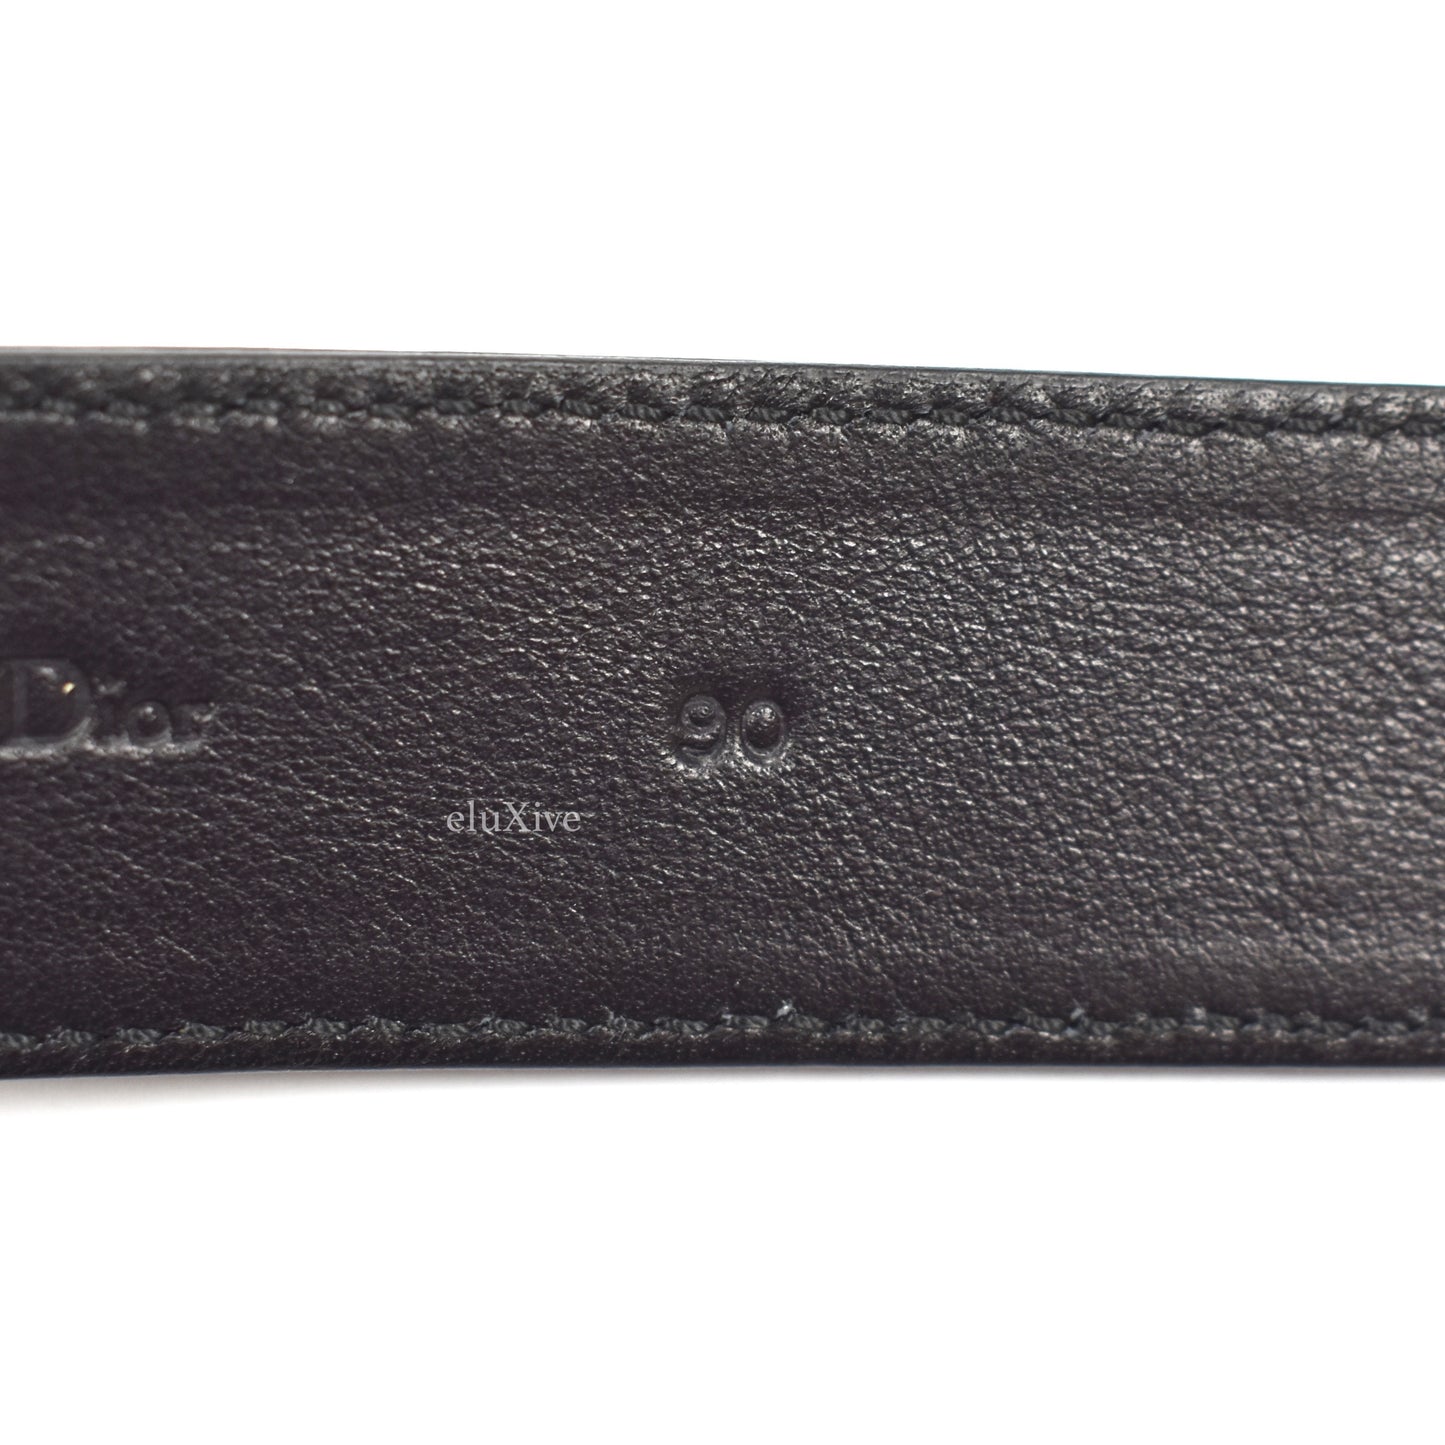 Dior - Black Leather D Logo Belt